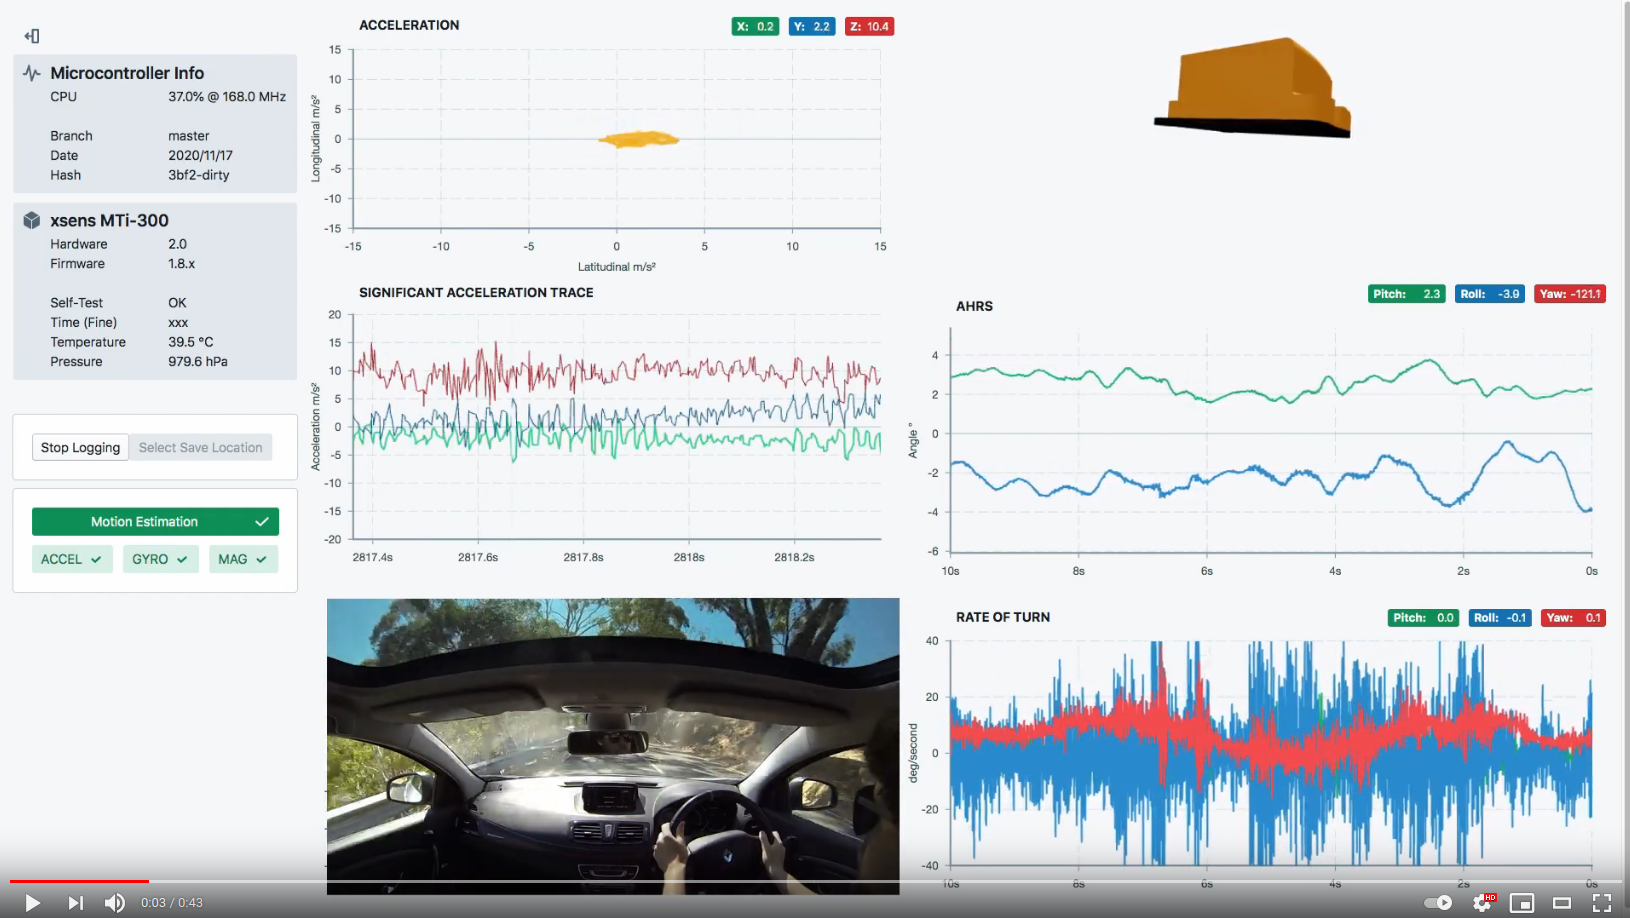 Youtube video of motion data plotting in car